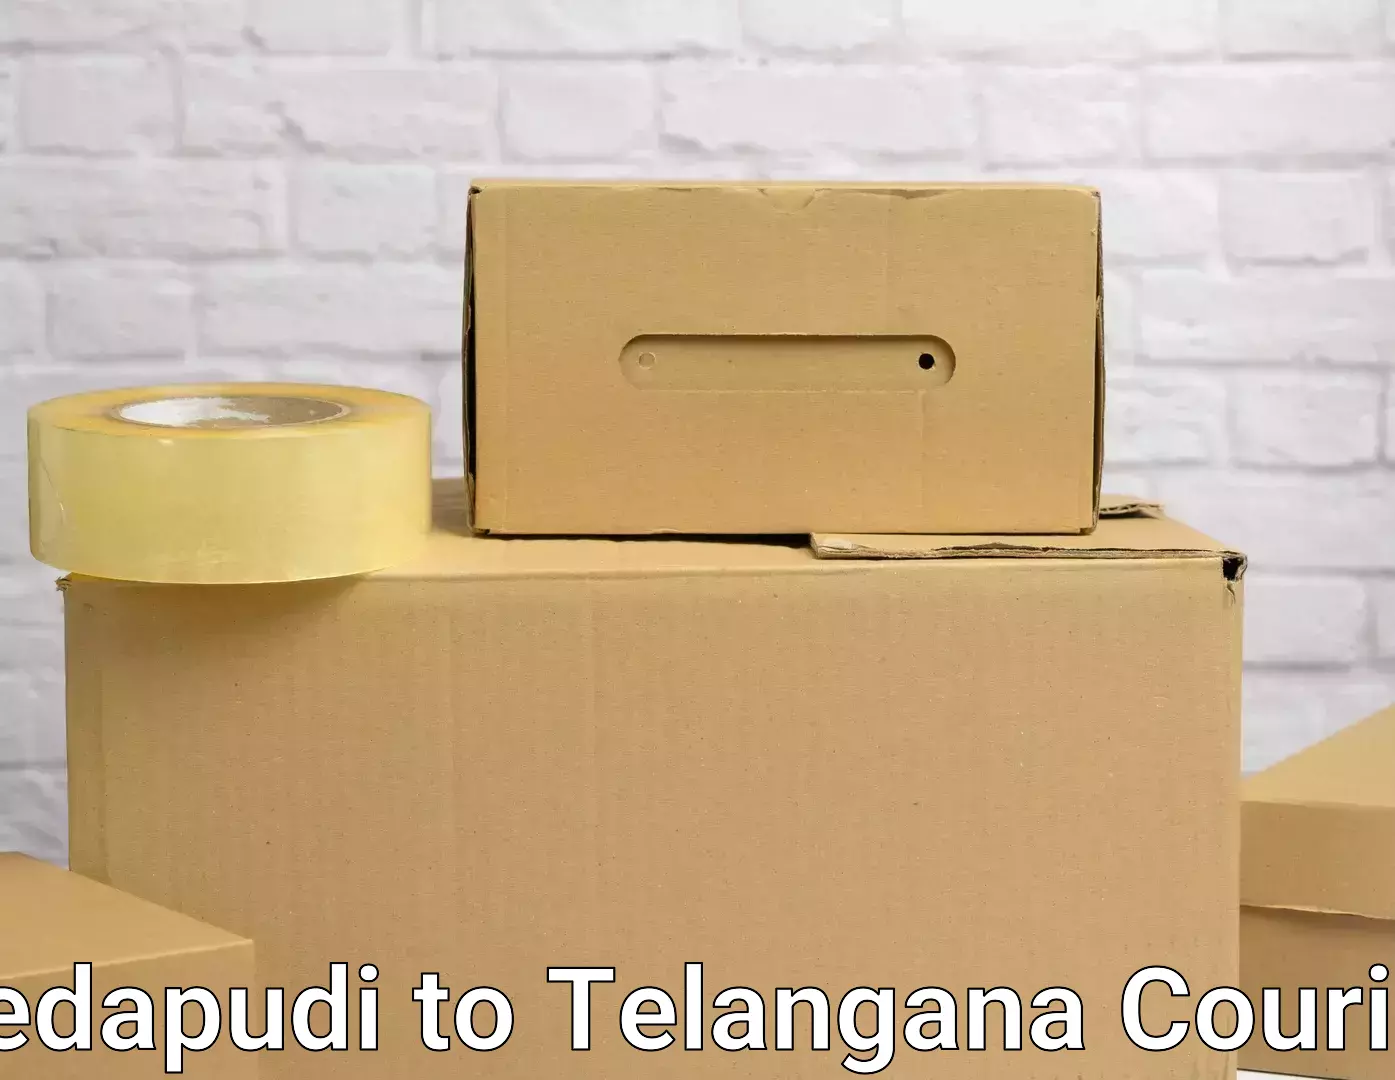 Reliable movers Pedapudi to Dharmapuri Jagtial